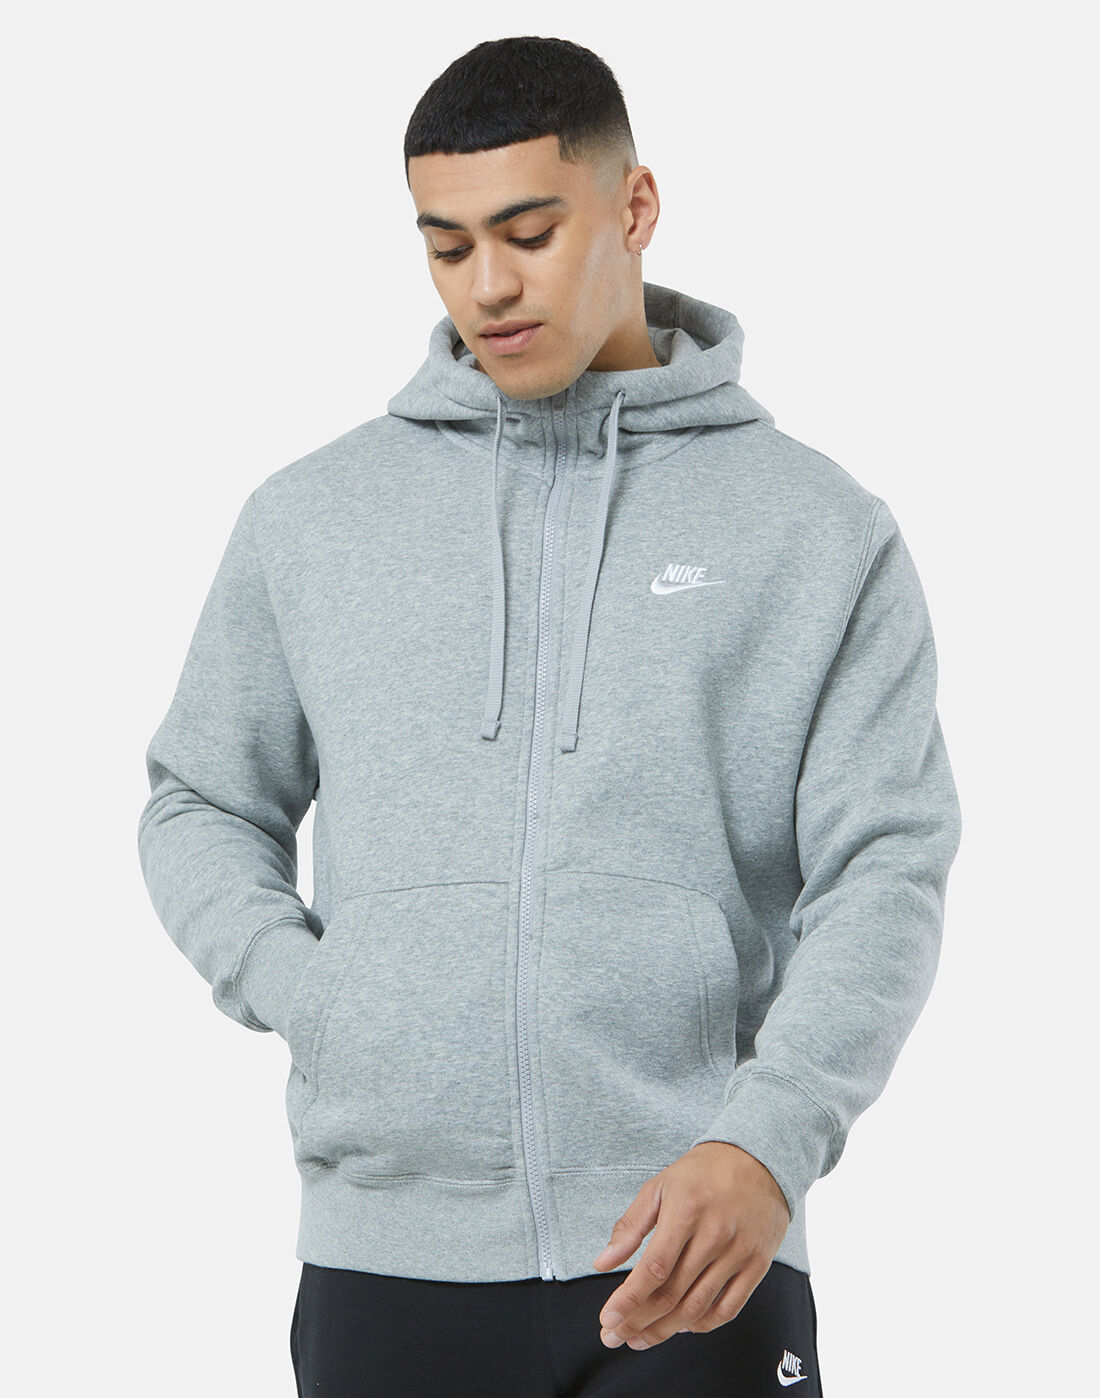 Men's Grey Nike Full Zip Hoodie | Life 